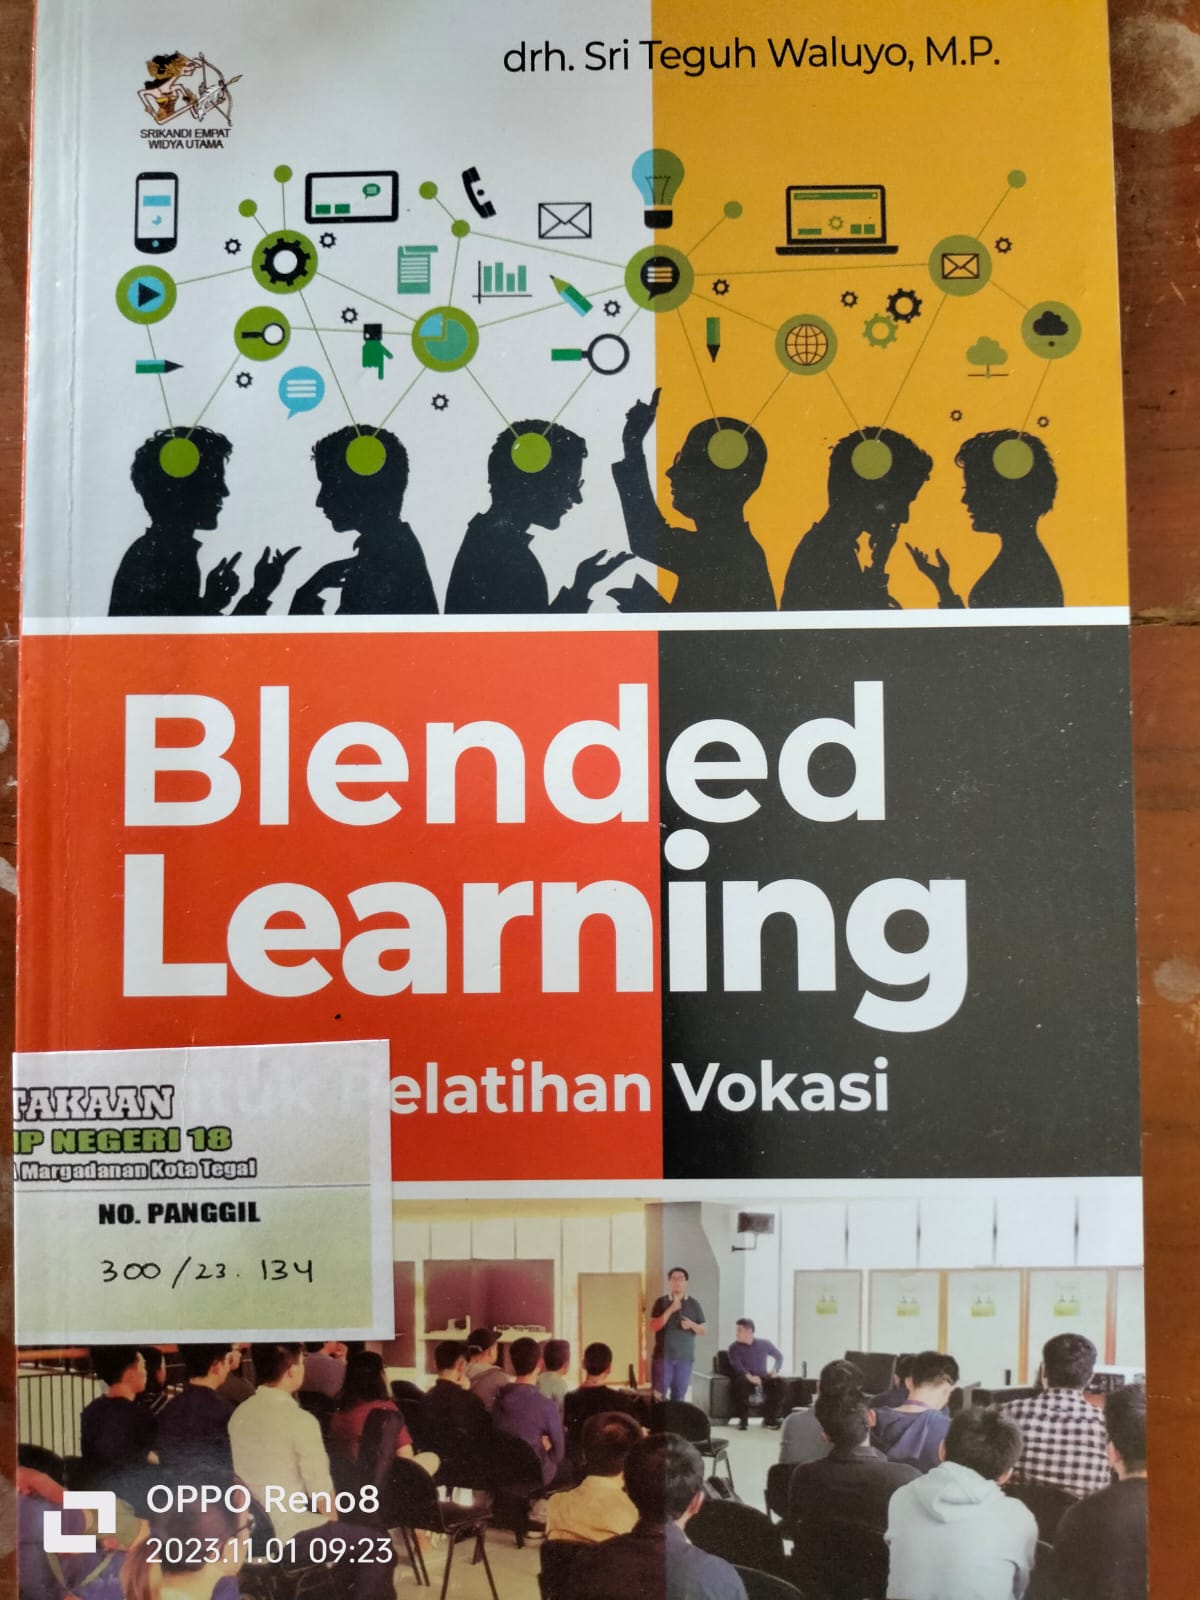 Blended Learning Untuk Pelatihan Vokasi